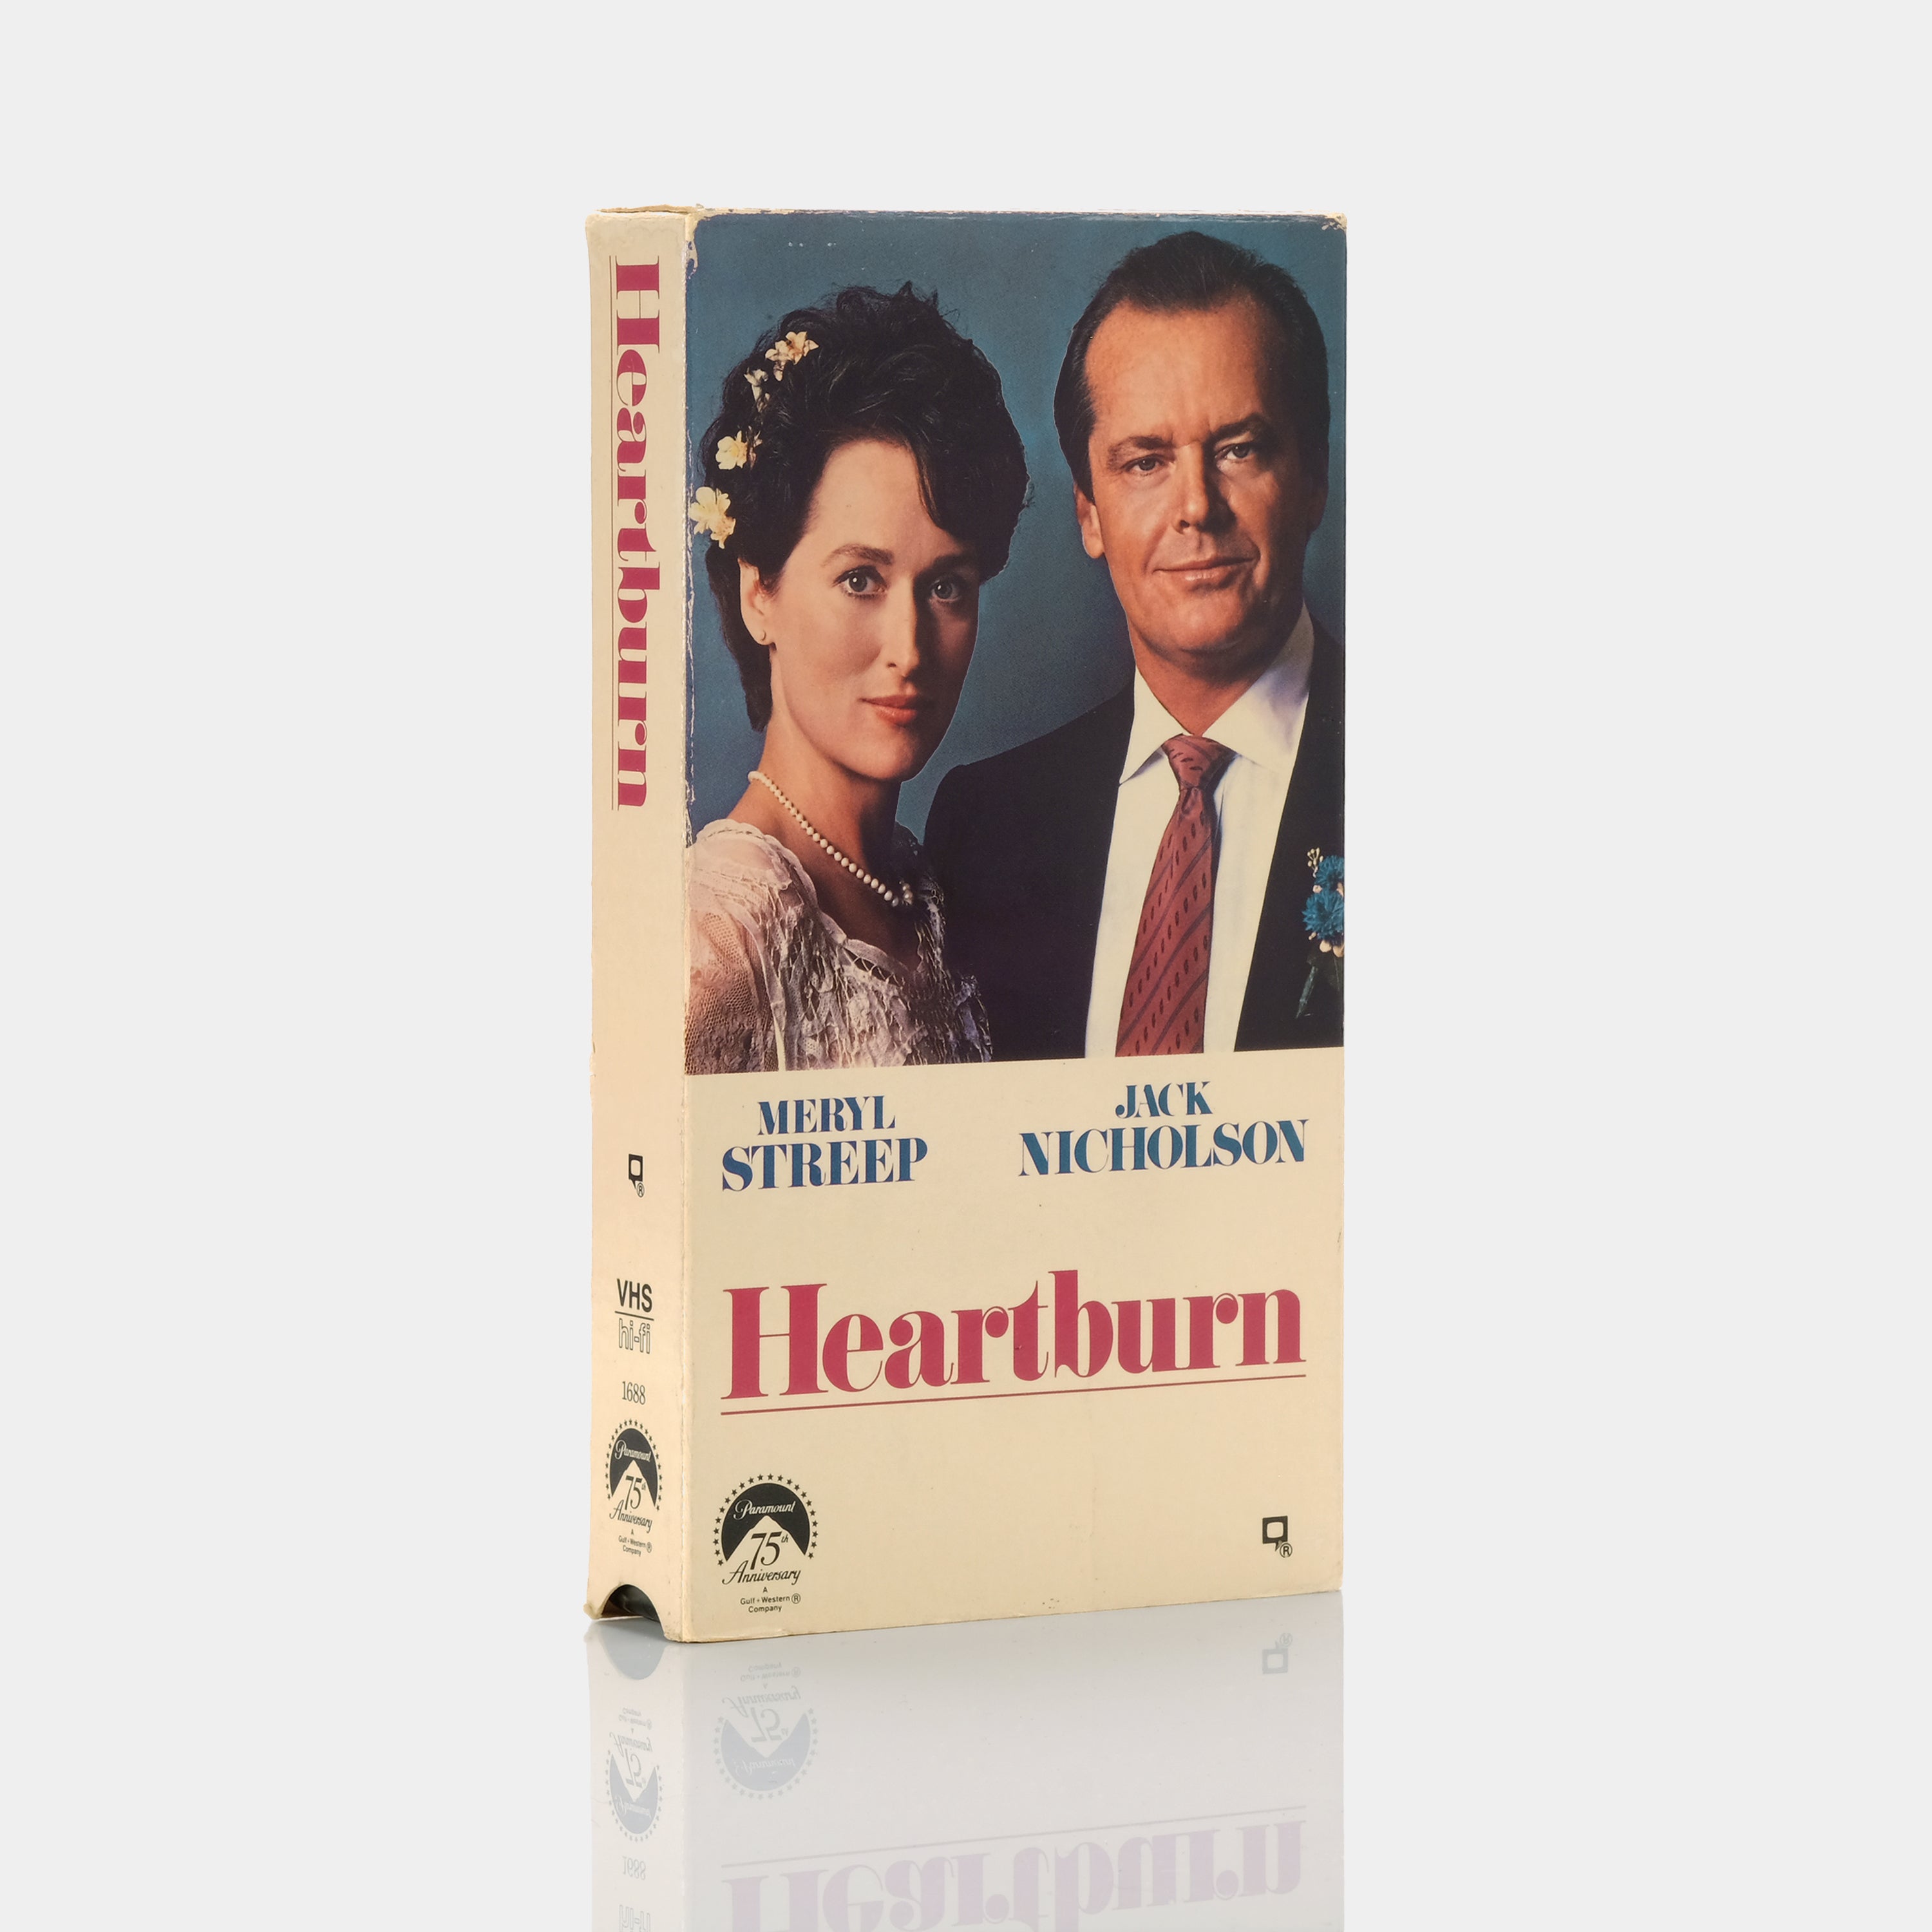 Heartburn VHS Tape